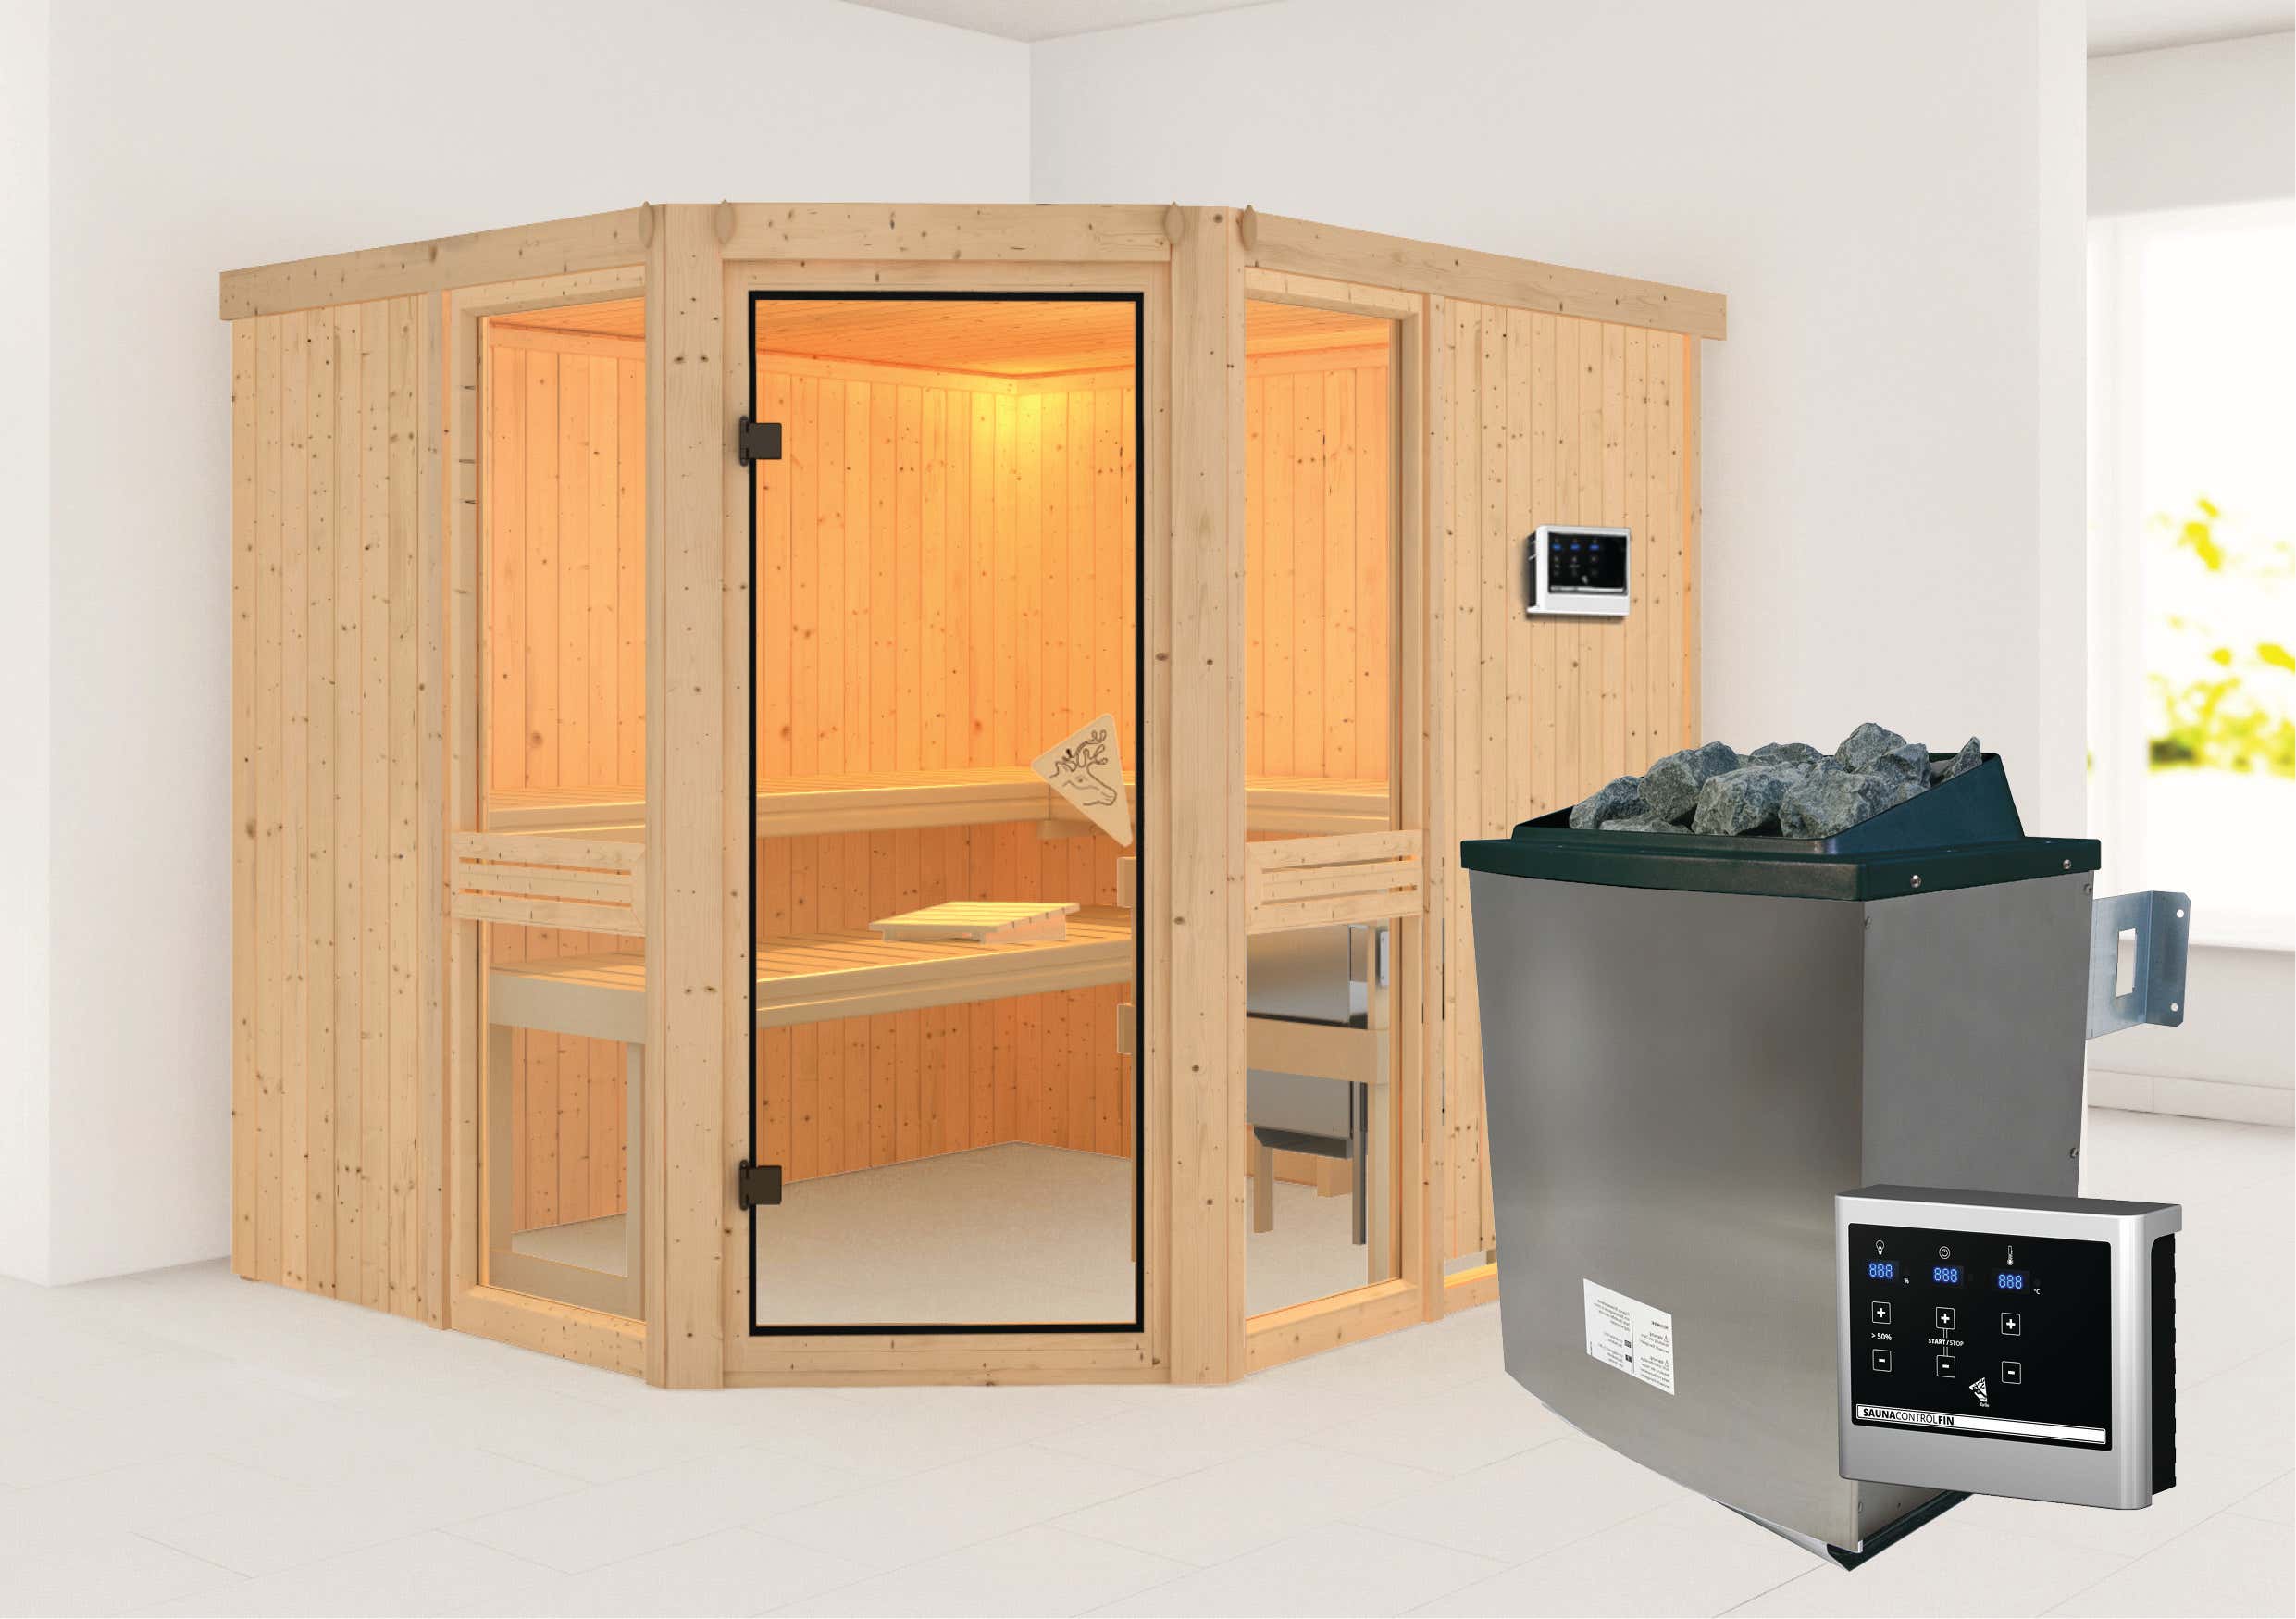 Karibu Sauna Innenkabine Amelia Saunaofen:9 KW integrierte Steuerung|Ausführung:Ohne Dachkranz|Größe:B 245 x T 210 x H 202 cm